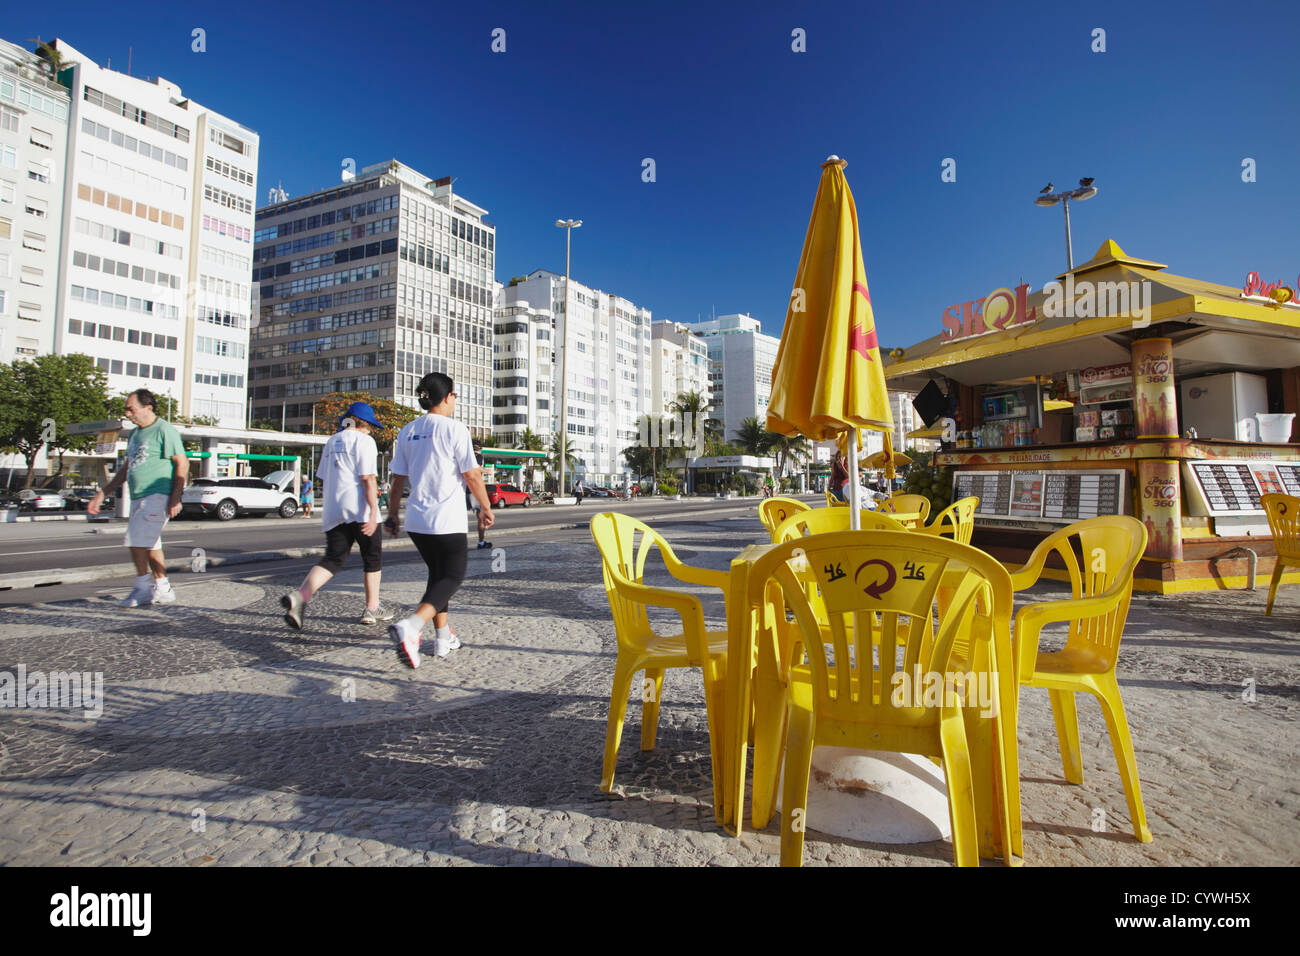 Cafe on Avenida Atlantica, Copacabana, Rio de Janeiro, Brazil Stock Photo